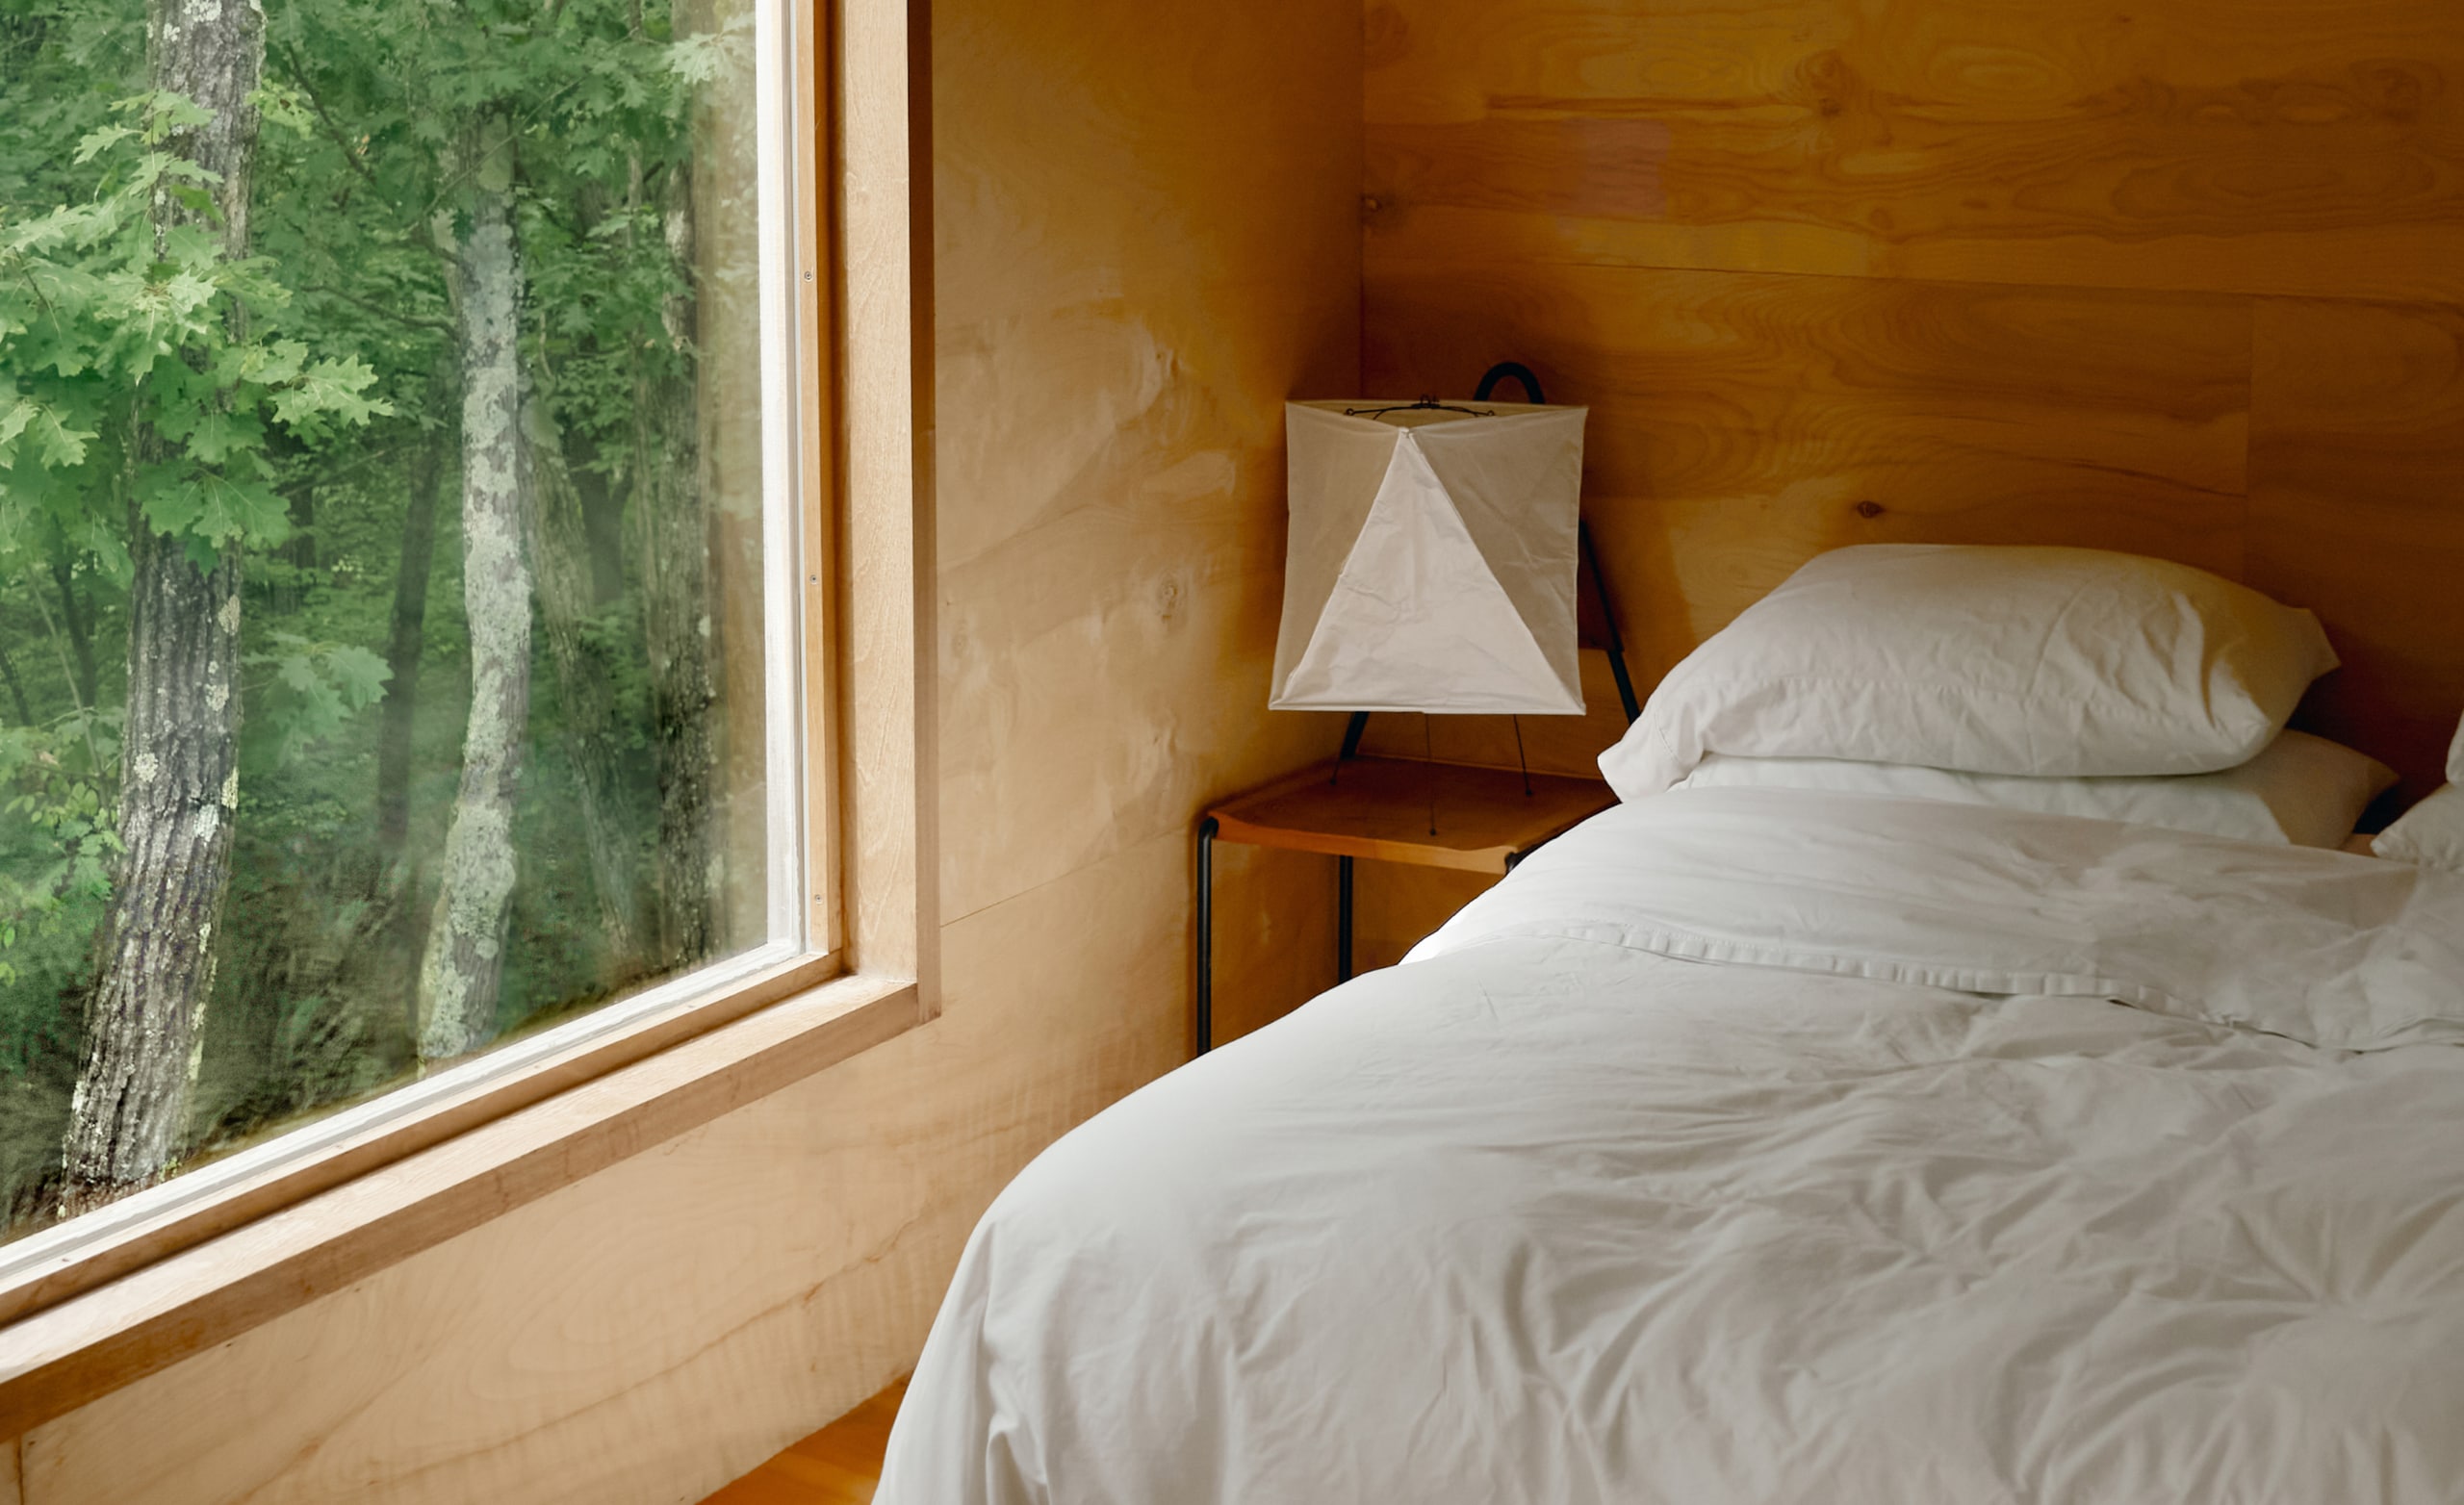 Una camera con lenzuola bianche su un letto appena fatto e una grande finestra da cui si possono ammirare gli alberi all'esterno.